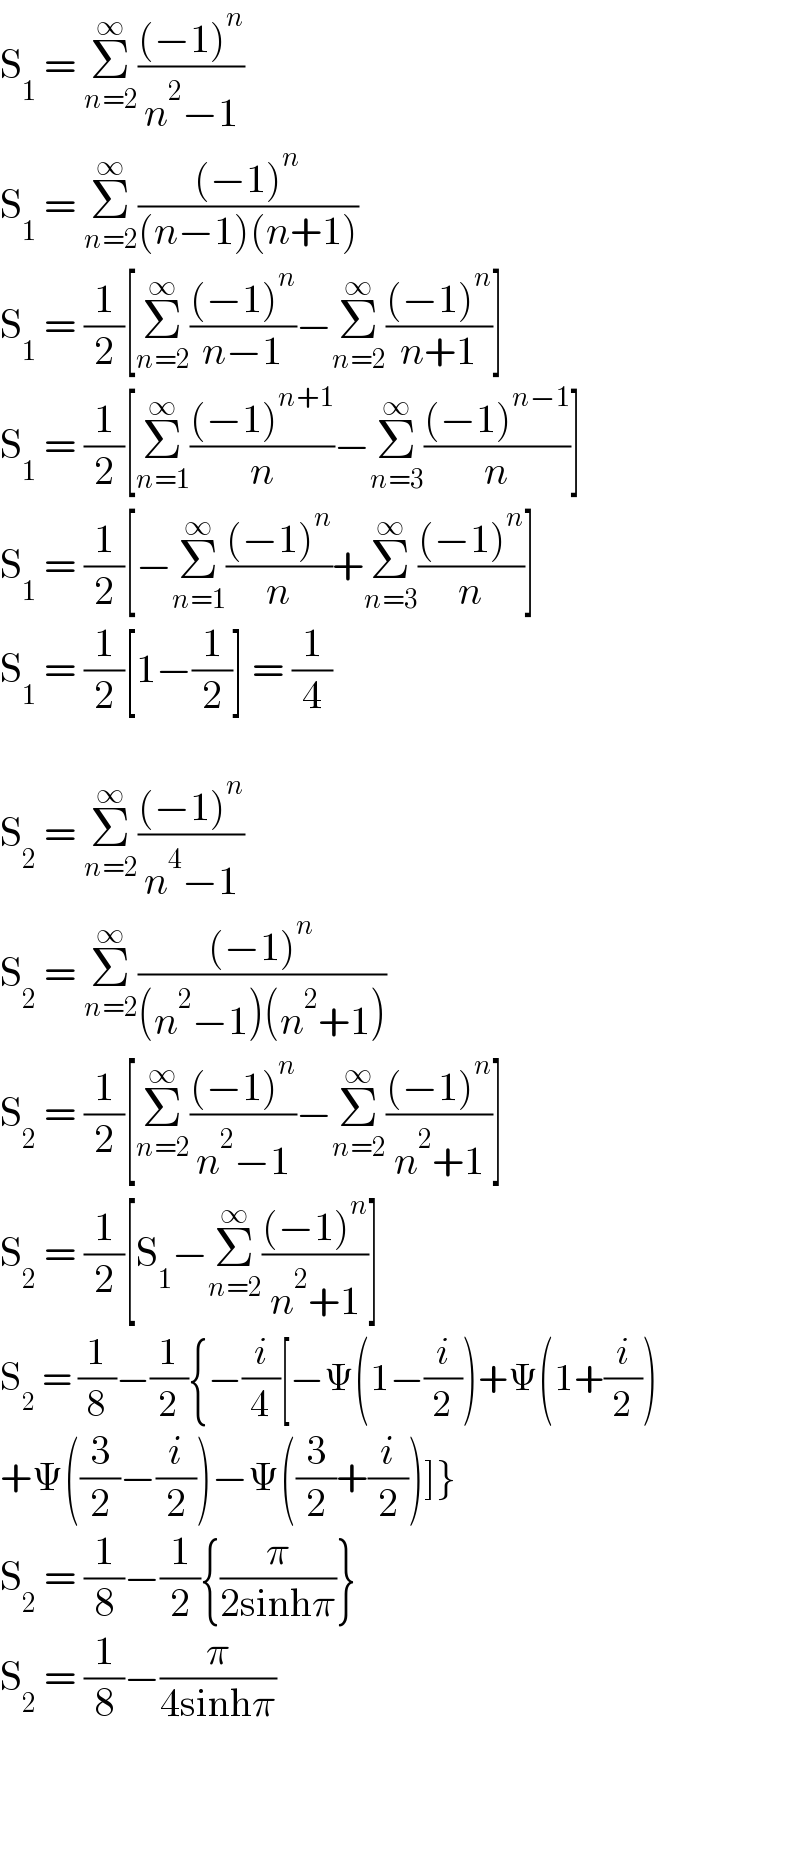 S_1  = Σ_(n=2) ^∞ (((−1)^n )/(n^2 −1))  S_1  = Σ_(n=2) ^∞ (((−1)^n )/((n−1)(n+1)))  S_1  = (1/2)[Σ_(n=2) ^∞ (((−1)^n )/(n−1))−Σ_(n=2) ^∞ (((−1)^n )/(n+1))]  S_1  = (1/2)[Σ_(n=1) ^∞ (((−1)^(n+1) )/n)−Σ_(n=3) ^∞ (((−1)^(n−1) )/n)]  S_1  = (1/2)[−Σ_(n=1) ^∞ (((−1)^n )/n)+Σ_(n=3) ^∞ (((−1)^n )/n)]  S_1  = (1/2)[1−(1/2)] = (1/4)    S_2  = Σ_(n=2) ^∞ (((−1)^n )/(n^4 −1))  S_2  = Σ_(n=2) ^∞ (((−1)^n )/((n^2 −1)(n^2 +1)))  S_2  = (1/2)[Σ_(n=2) ^∞ (((−1)^n )/(n^2 −1))−Σ_(n=2) ^∞ (((−1)^n )/(n^2 +1))]  S_2  = (1/2)[S_1 −Σ_(n=2) ^∞ (((−1)^n )/(n^2 +1))]  S_2  = (1/8)−(1/2){−(i/4)[−Ψ(1−(i/2))+Ψ(1+(i/2))  +Ψ((3/2)−(i/2))−Ψ((3/2)+(i/2))]}  S_2  = (1/8)−(1/2){(π/(2sinhπ))}  S_2  = (1/8)−(π/(4sinhπ))      